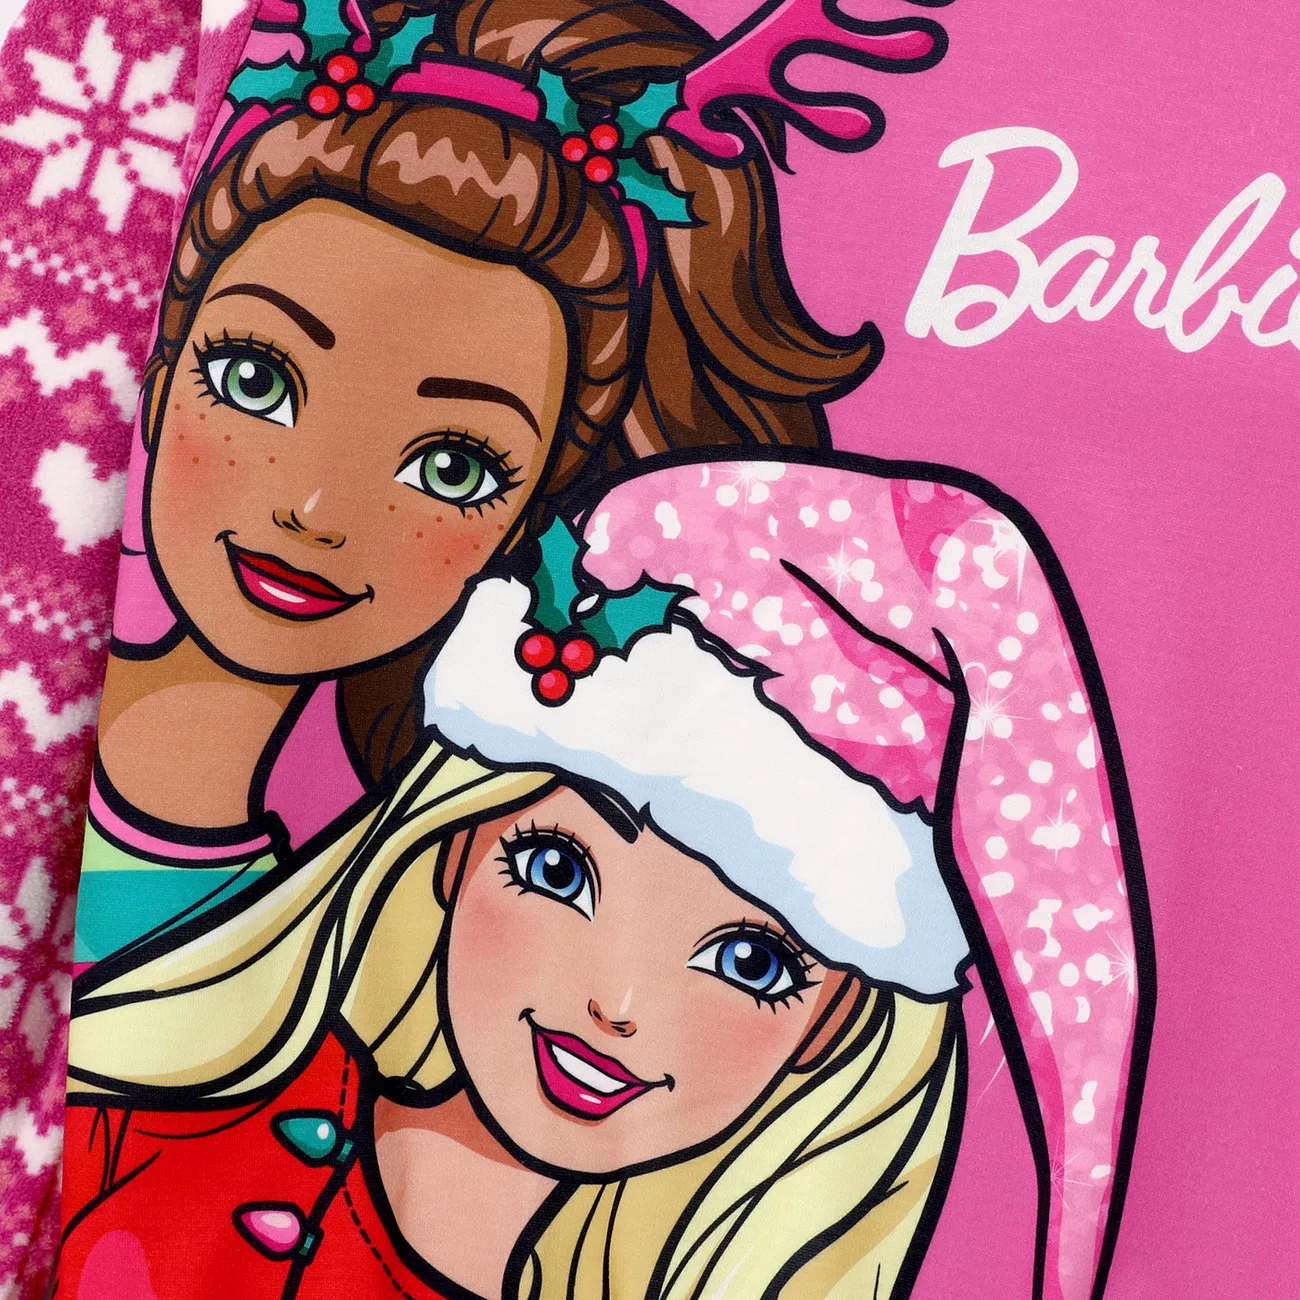 Barbie Enfants Fille Personnage Pull Sweat-shirt Rose big image 1